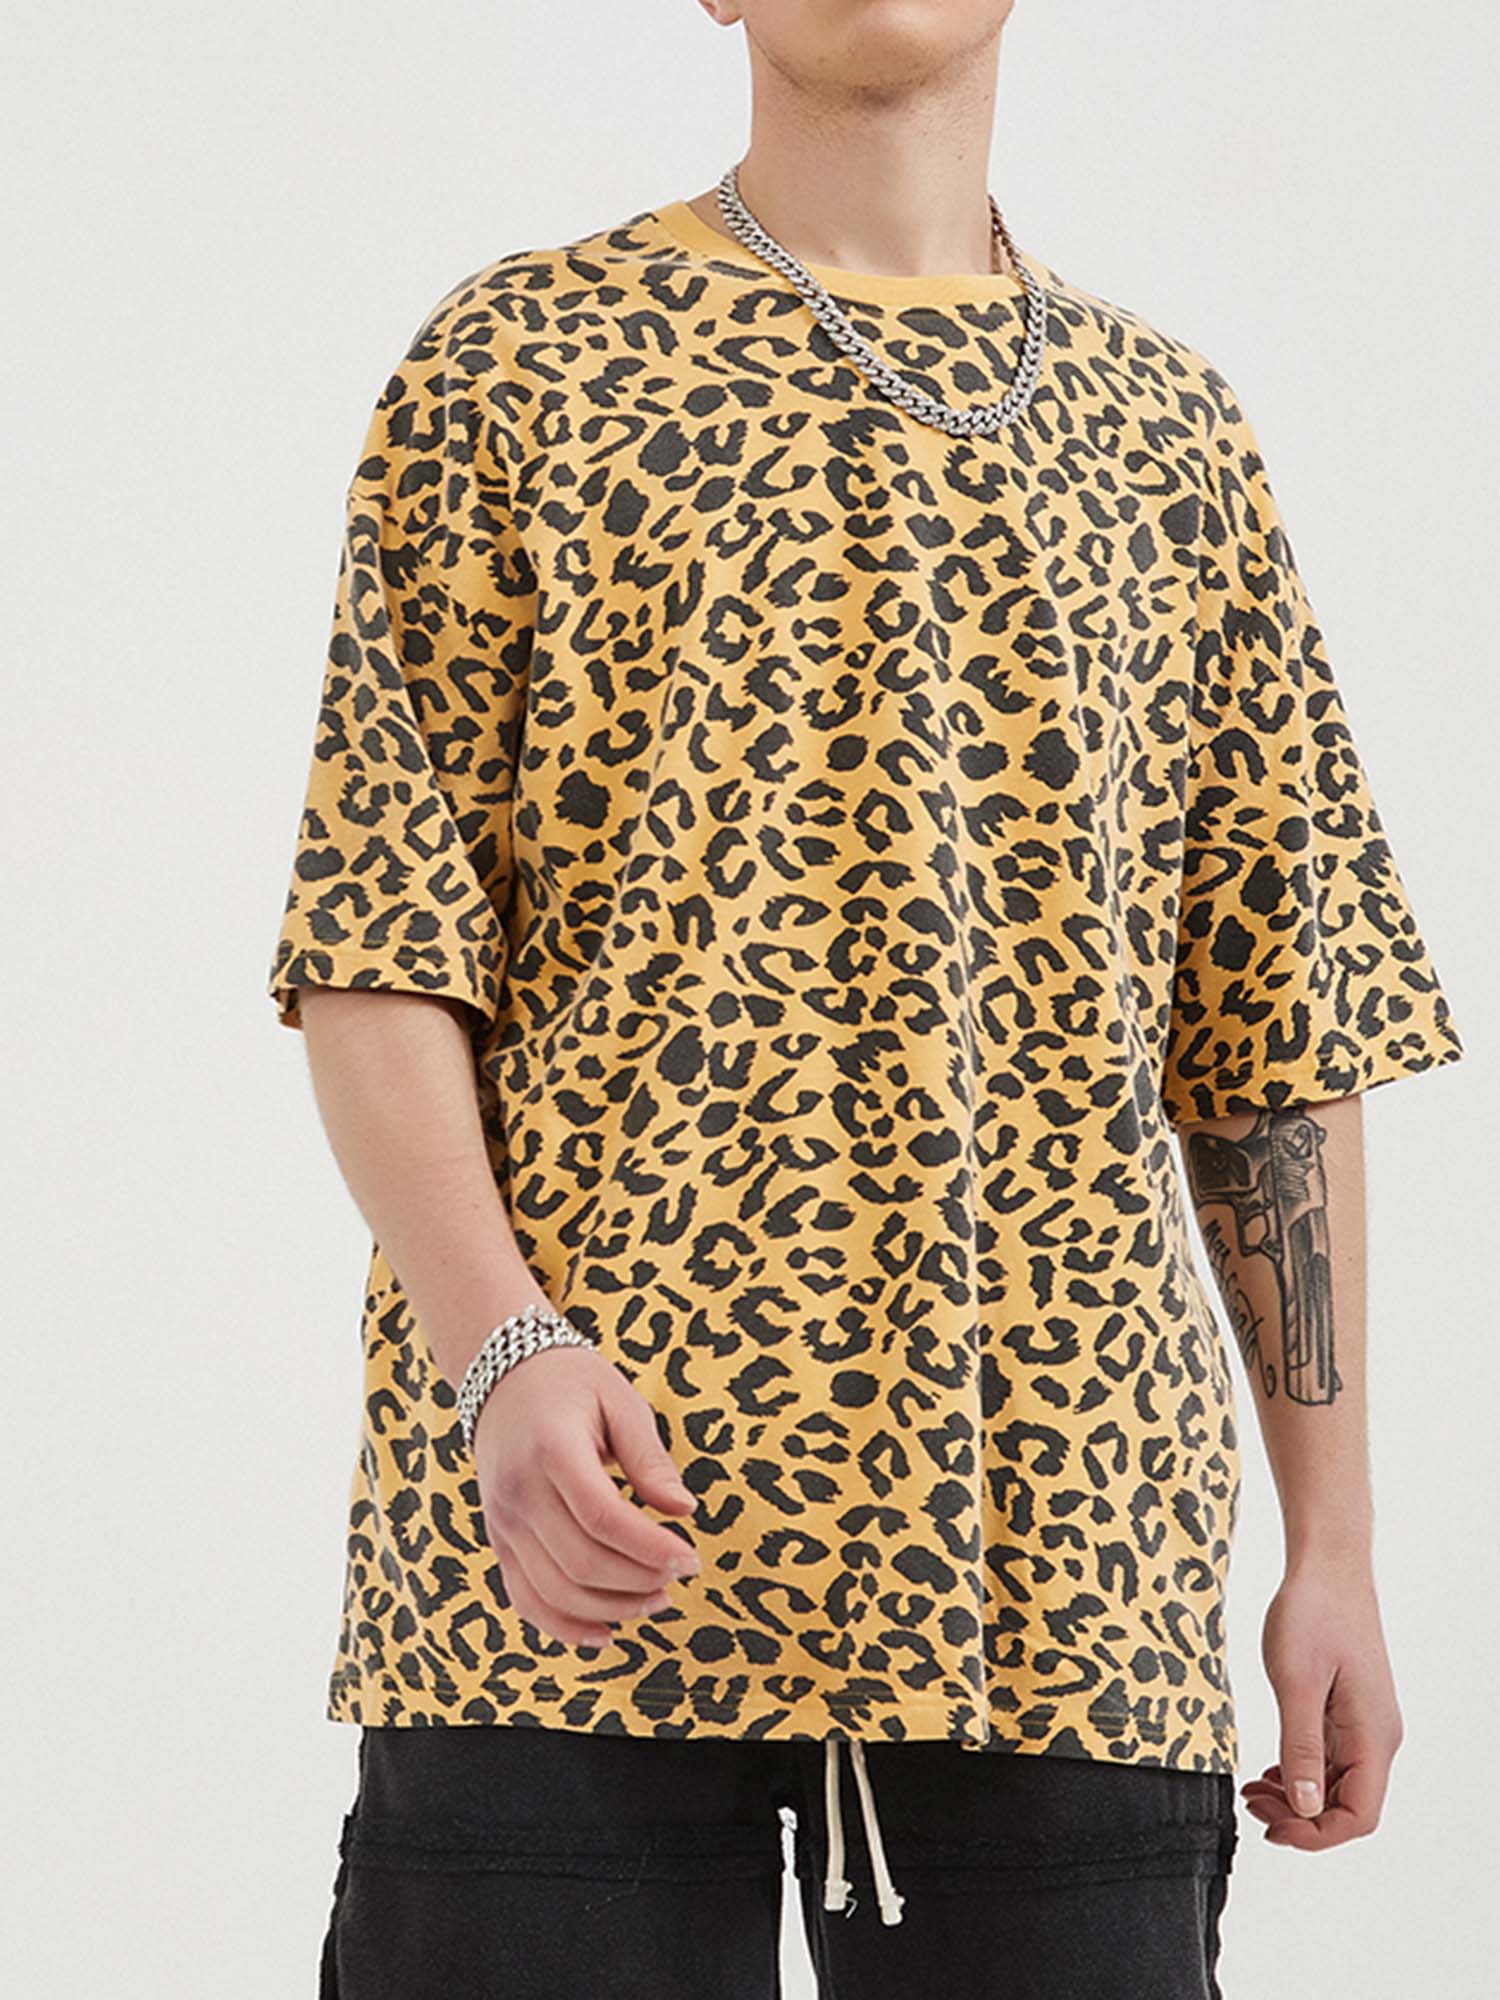 JUSTNOTAG T-shirt à manches courtes 100% coton imprimé léopard gris foncé